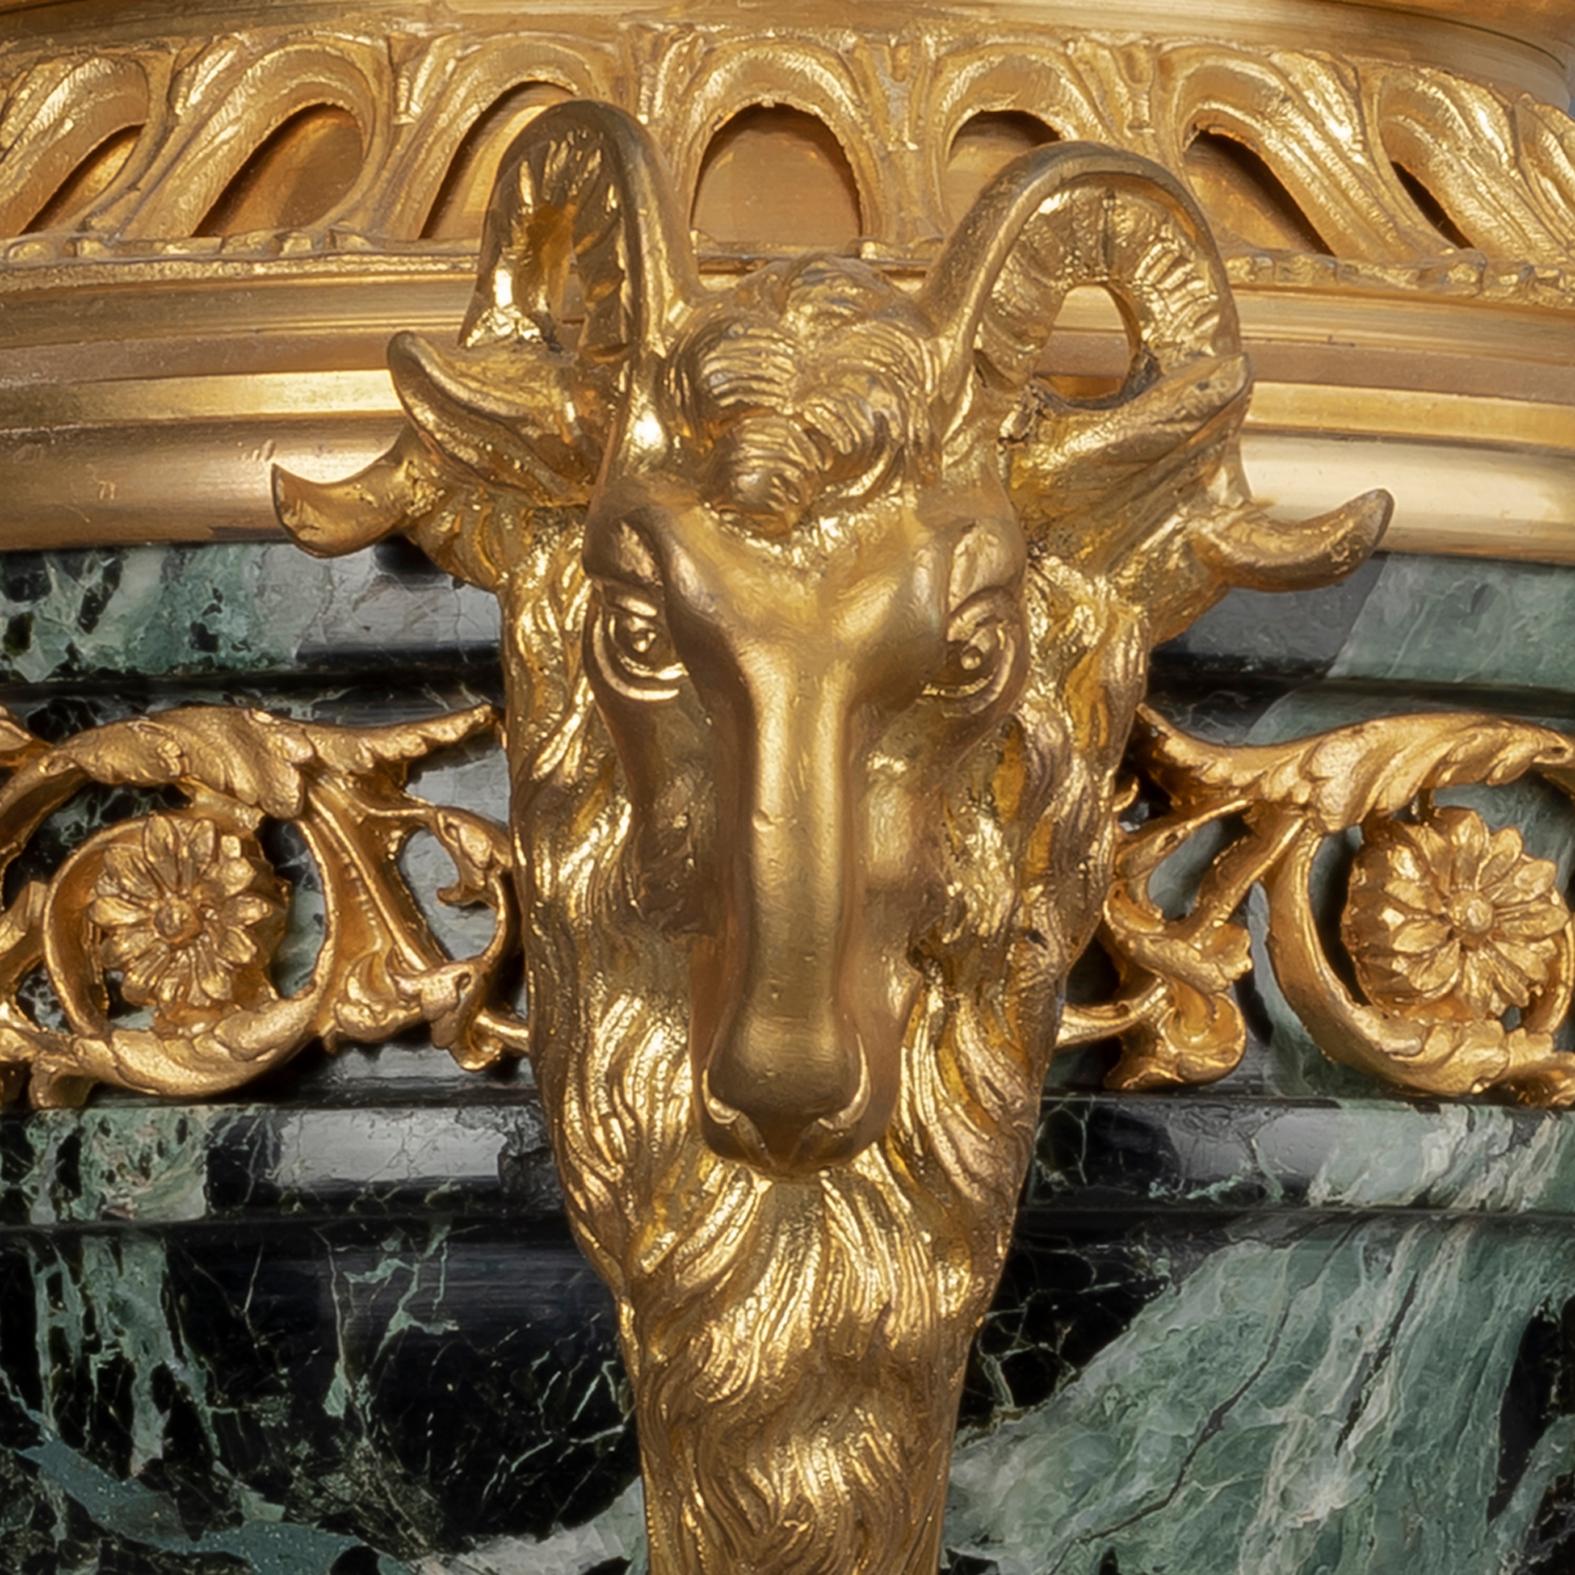 Ein Paar vergoldete Bronze- und Marmorkassetten im Stil Louis XVI.

Jeweils mit einer Urne aus Verde-Antico-Marmor und einem mit Blattgirlanden und Beeren geschmückten Deckel, gestützt auf Widdermasken-Monopodien, die eine Spiralsäule umgeben, auf